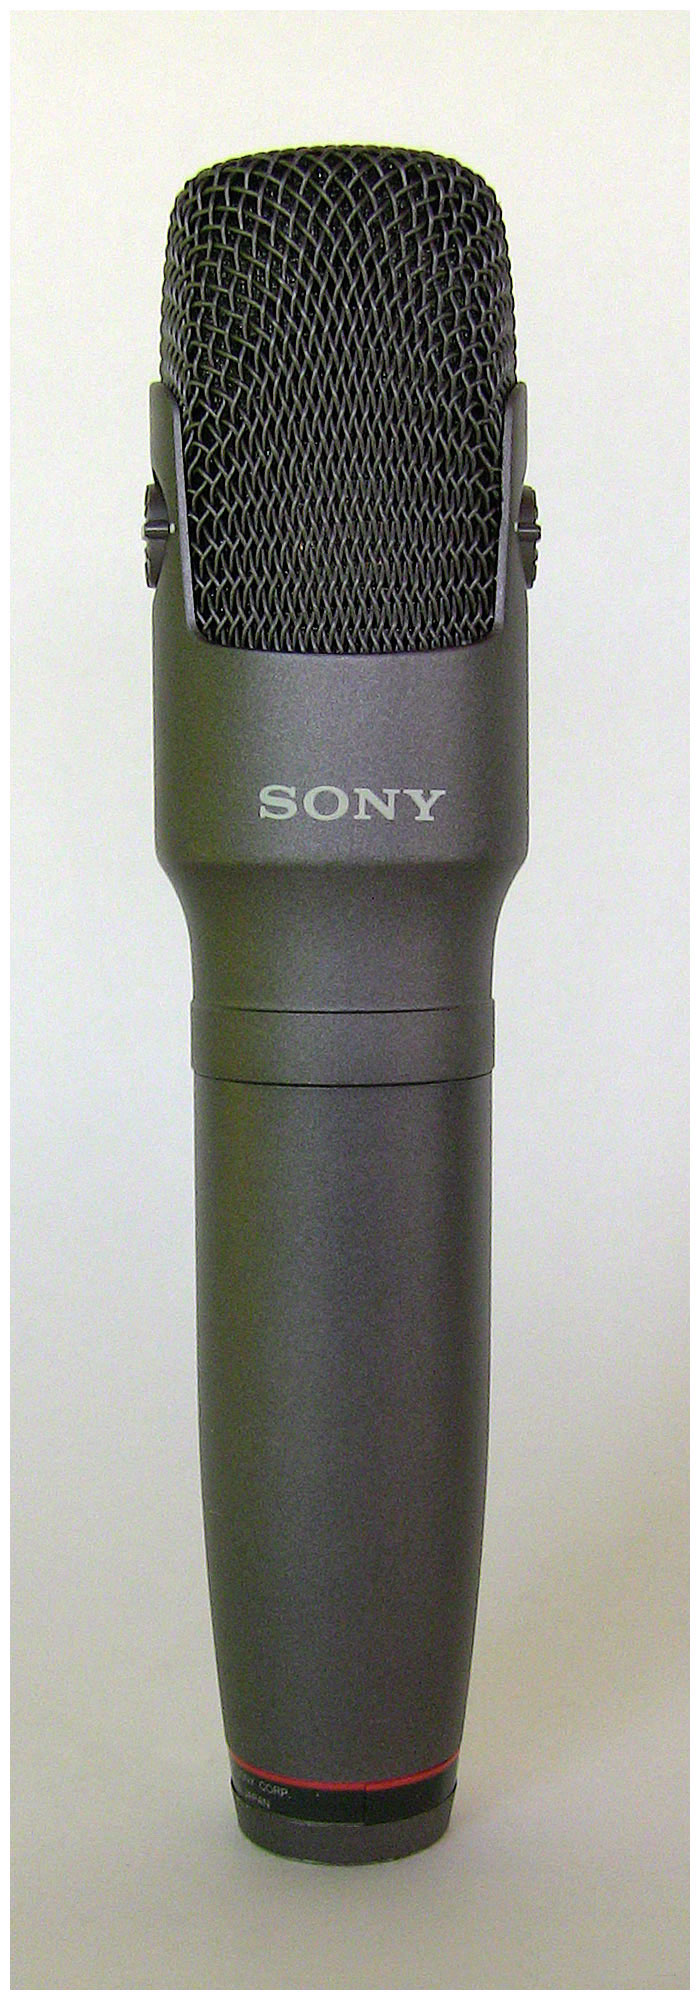 Sony Model ECM-MS957